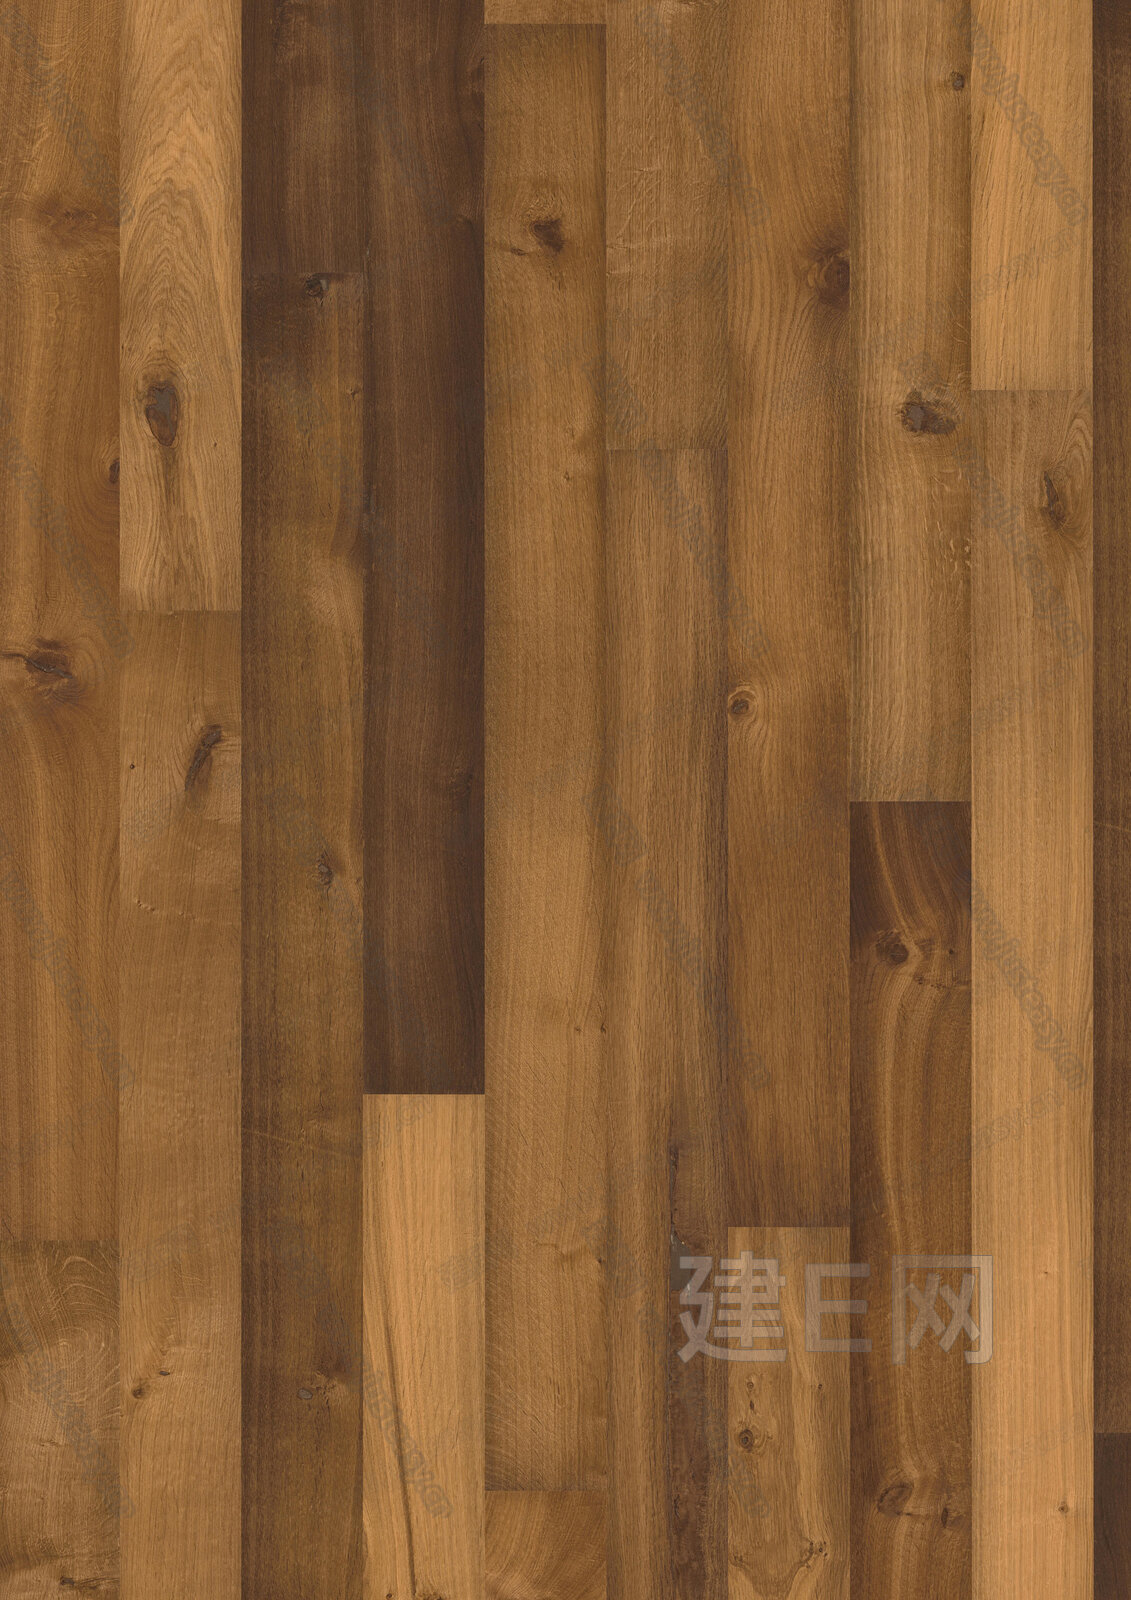 【3D贴图】米色木地板-3d材质贴图下载_贴图素材_3d贴图网 - 建E网3dmax材质库